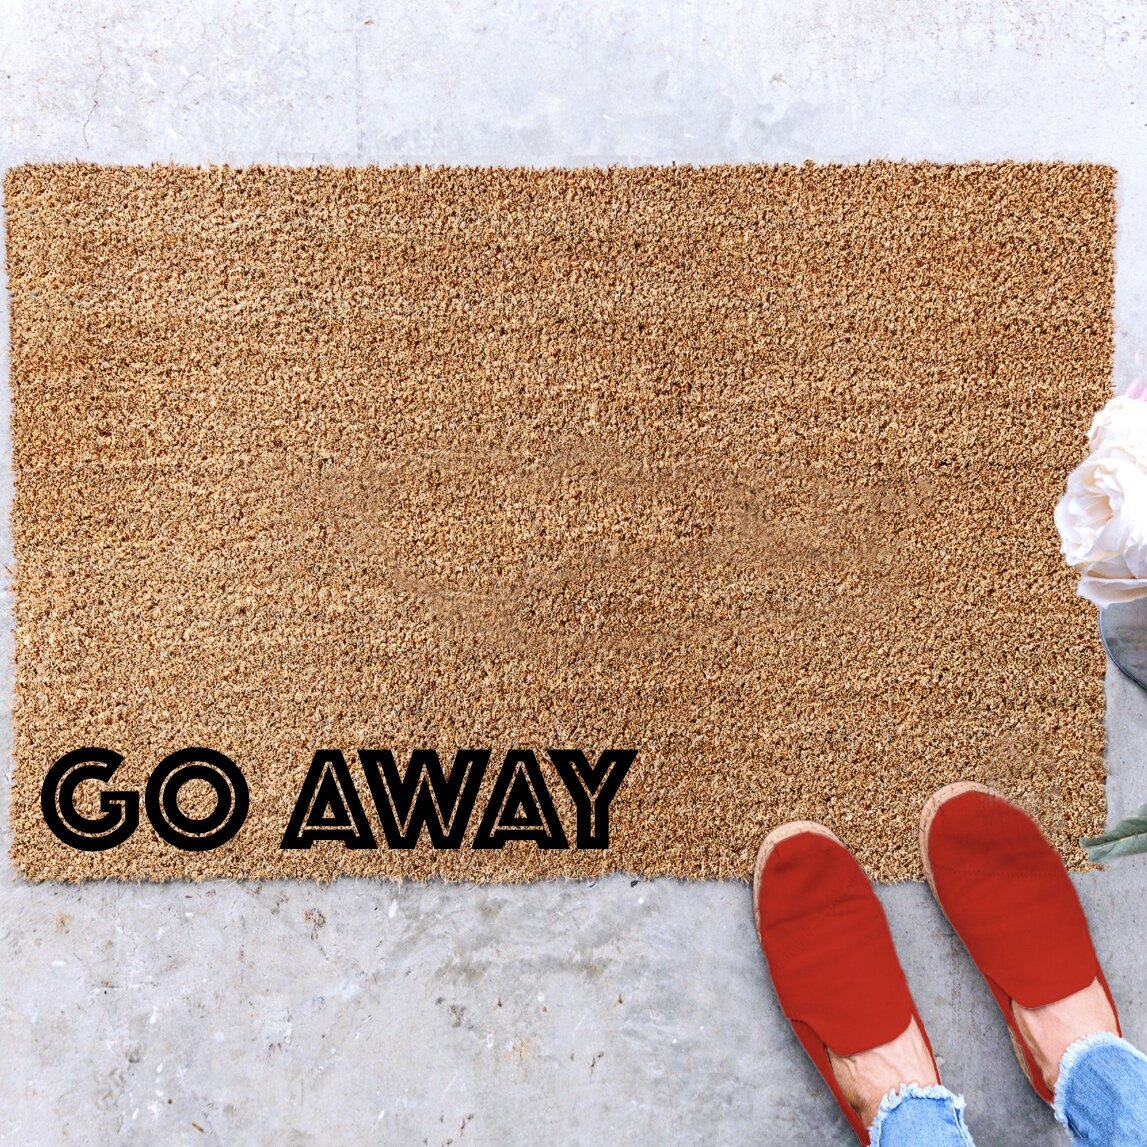 Home Sweet Home Doormat, home decor, custom doormat, welcome mat,  housewarming, front door mat, welcome doormat, pet home, paw print